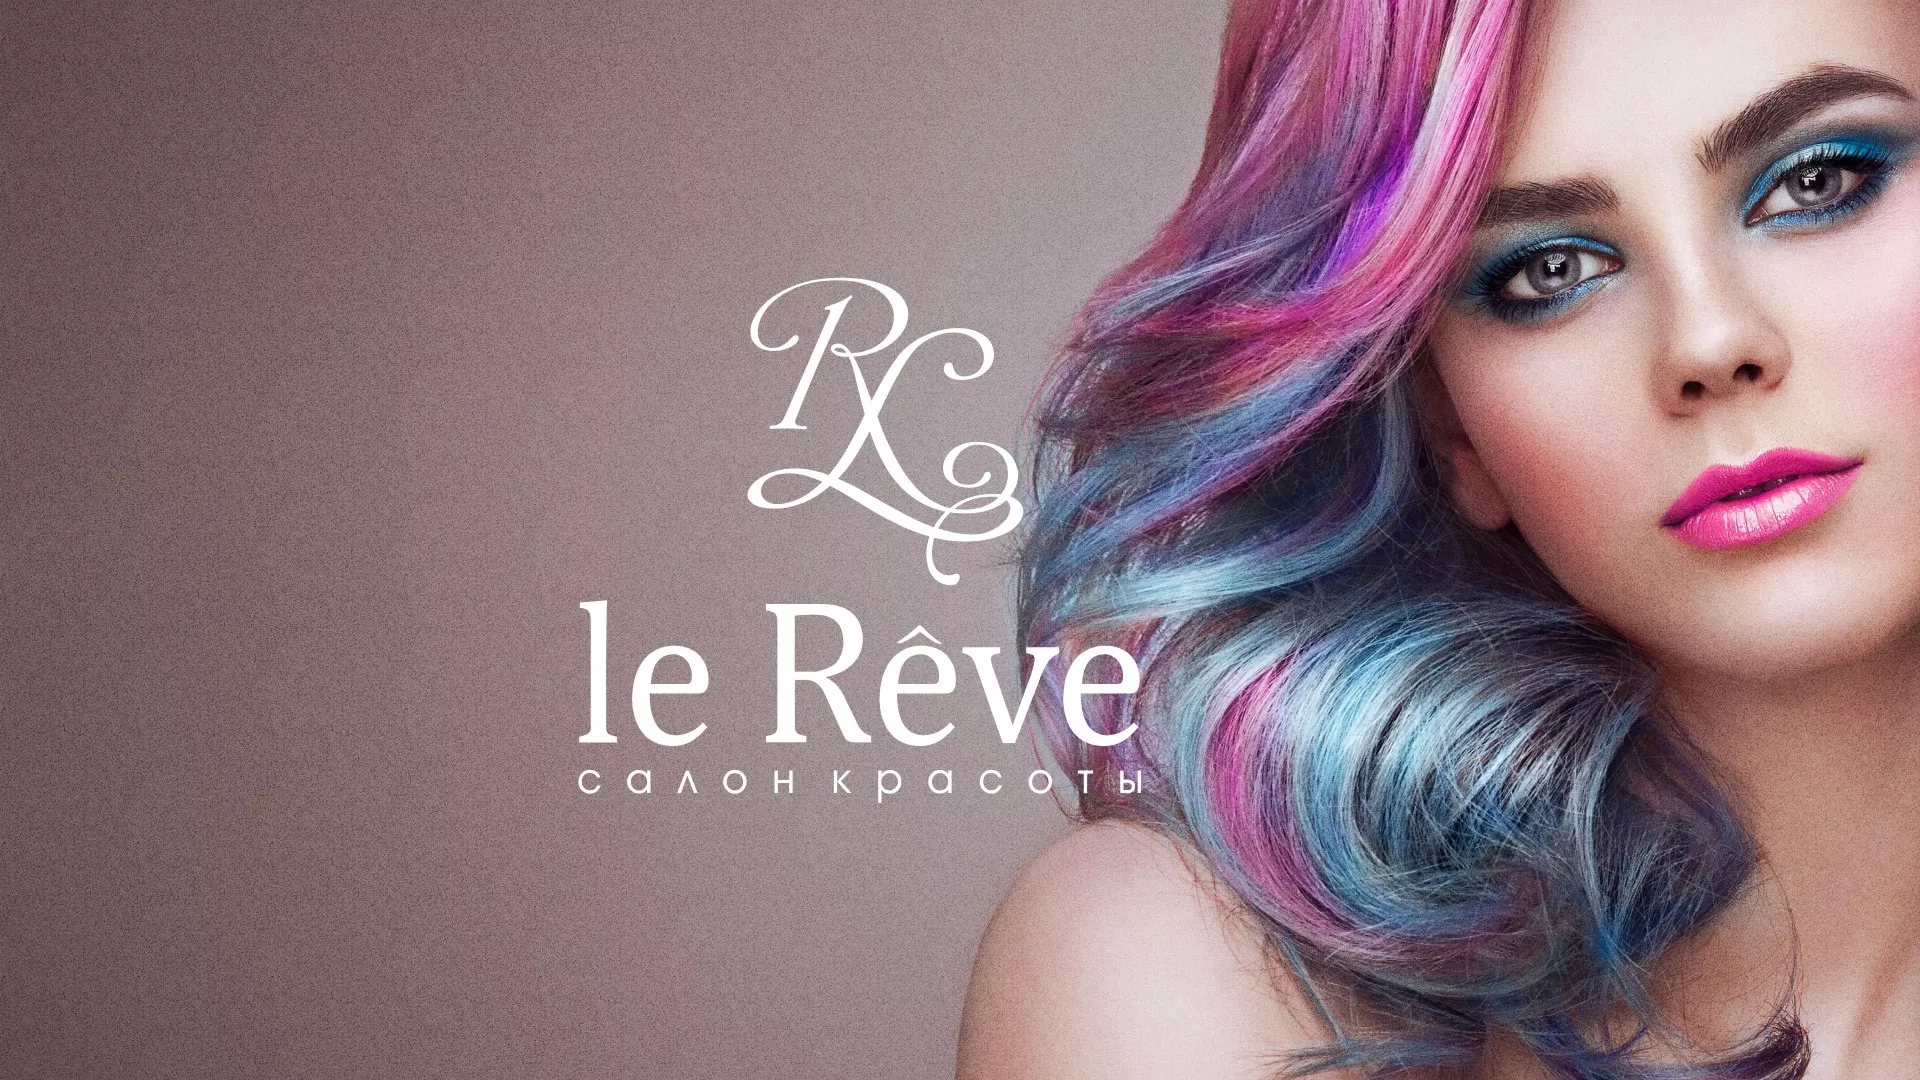 Создание сайта для салона красоты «Le Reve» в Осе